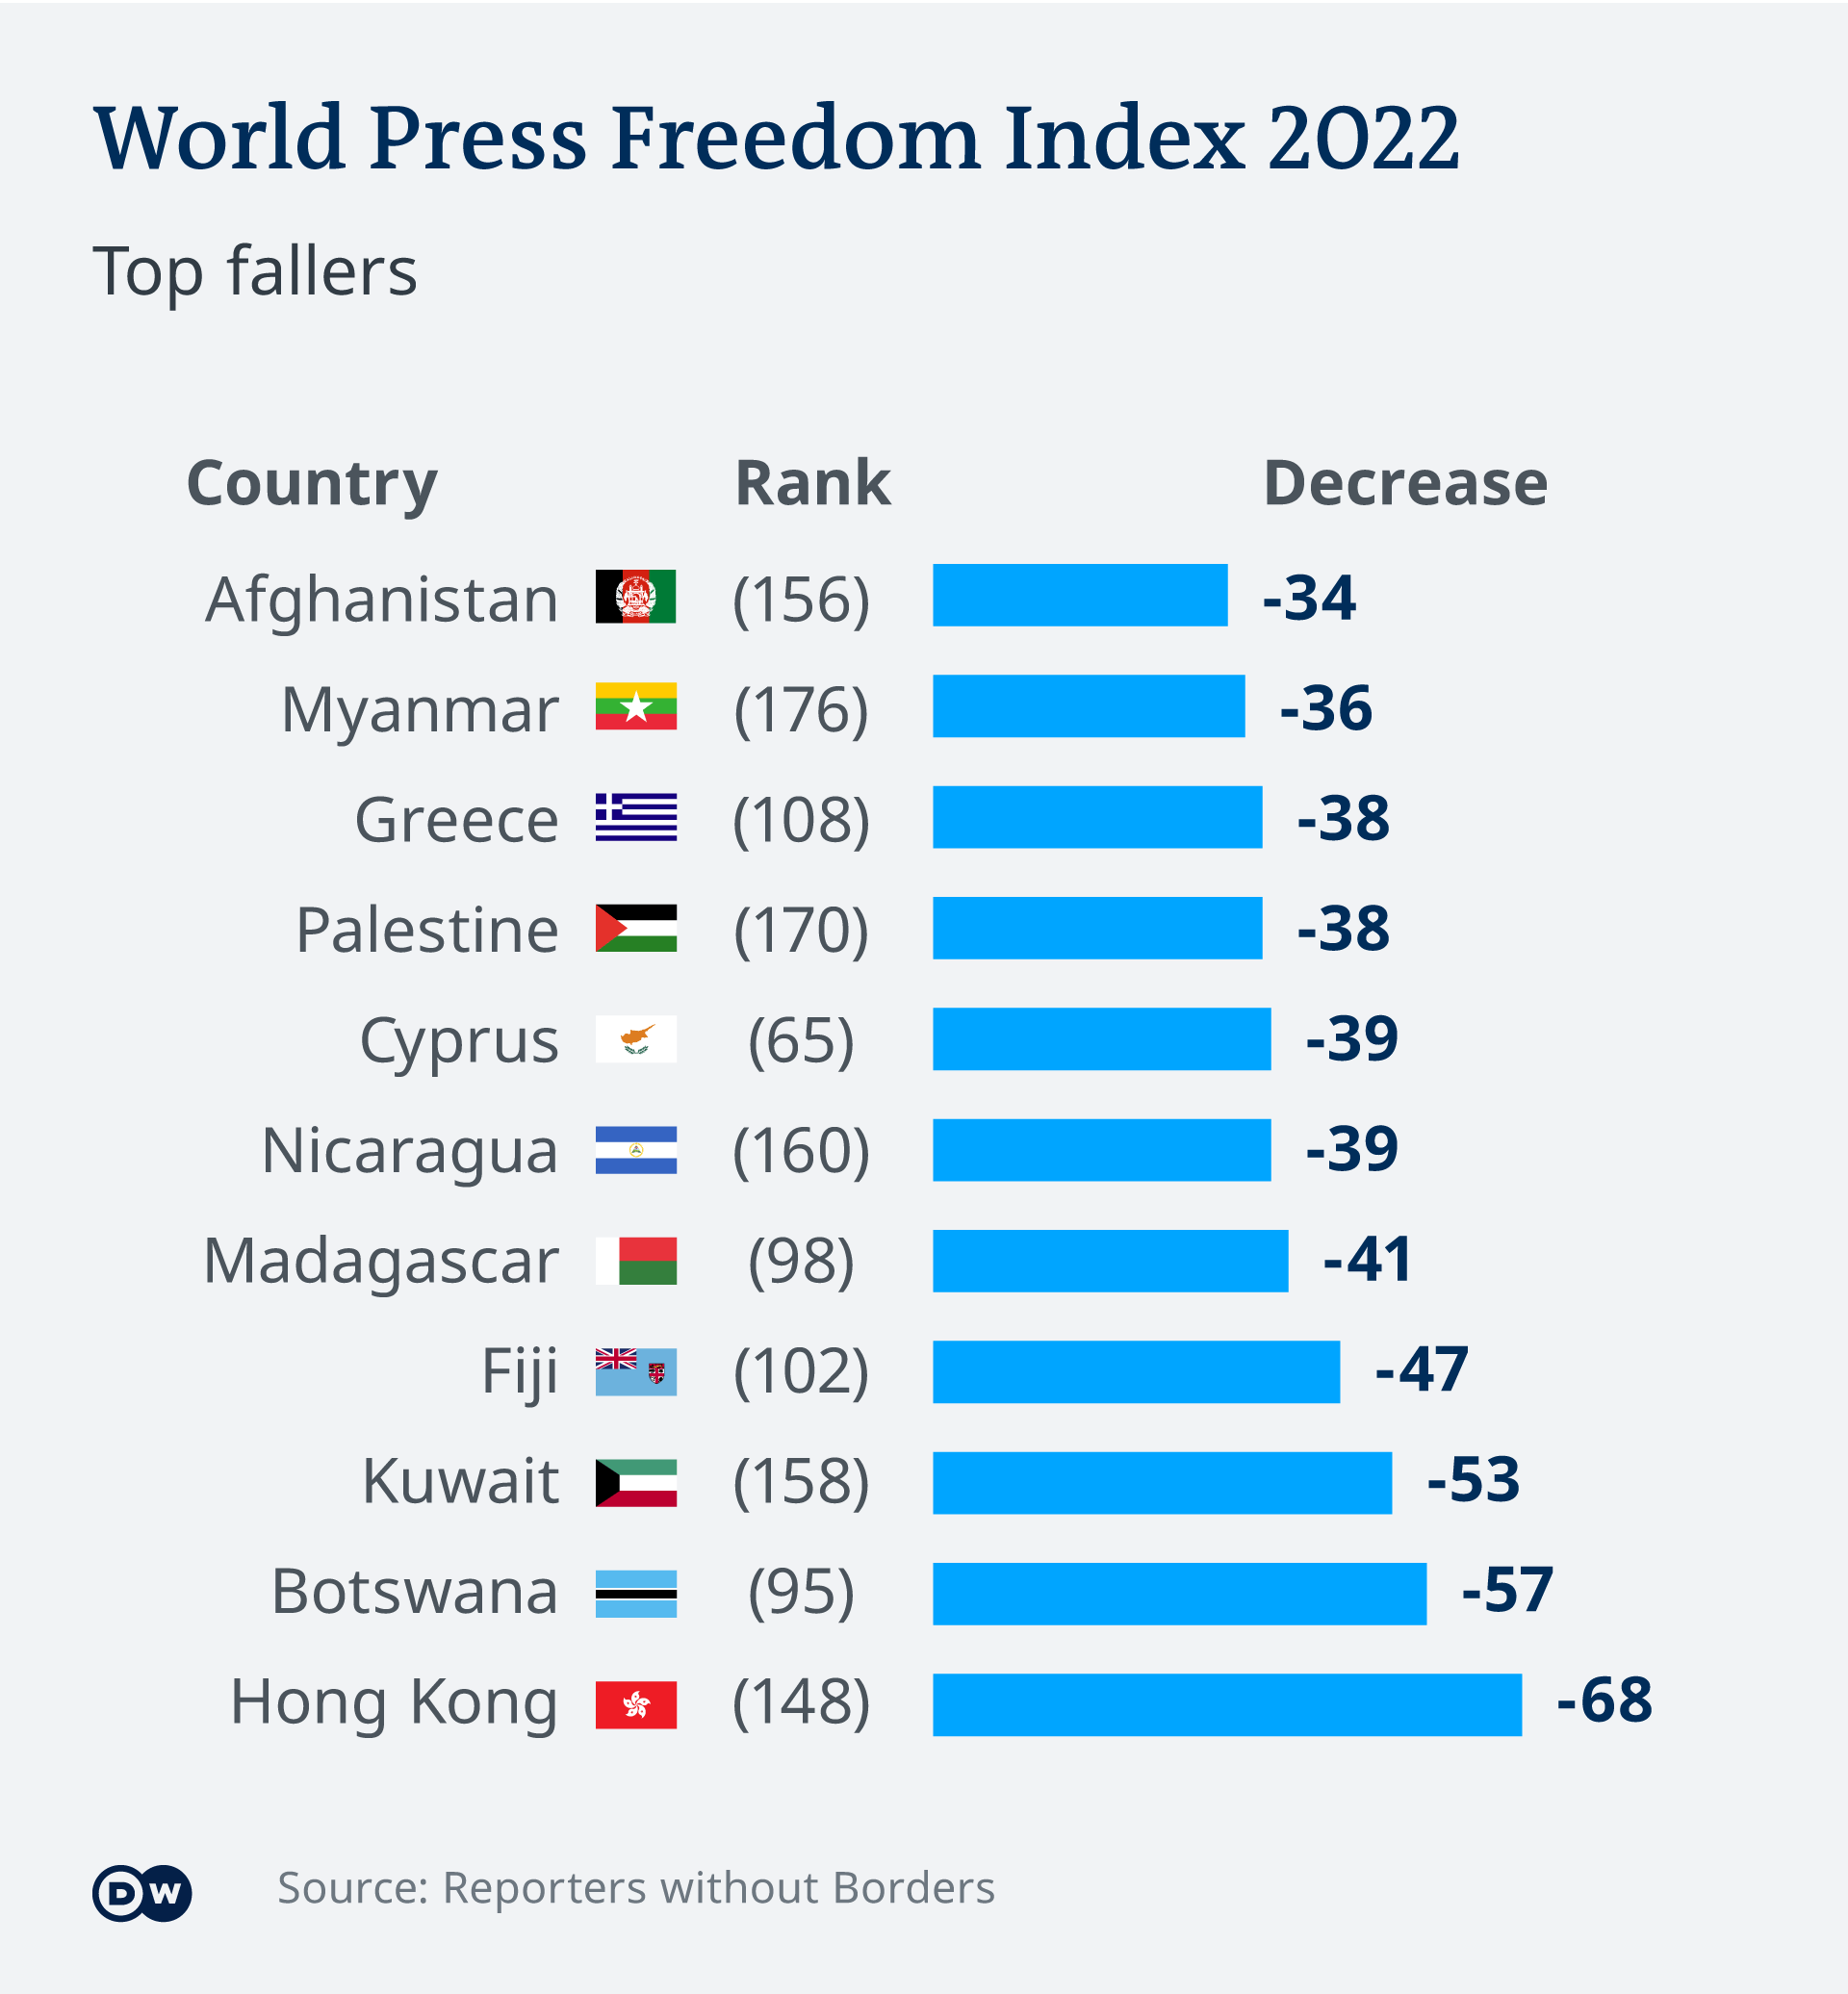 2022年香港新聞自由指數從80名下降至148名,跌68名，成為跌幅最大的地區。